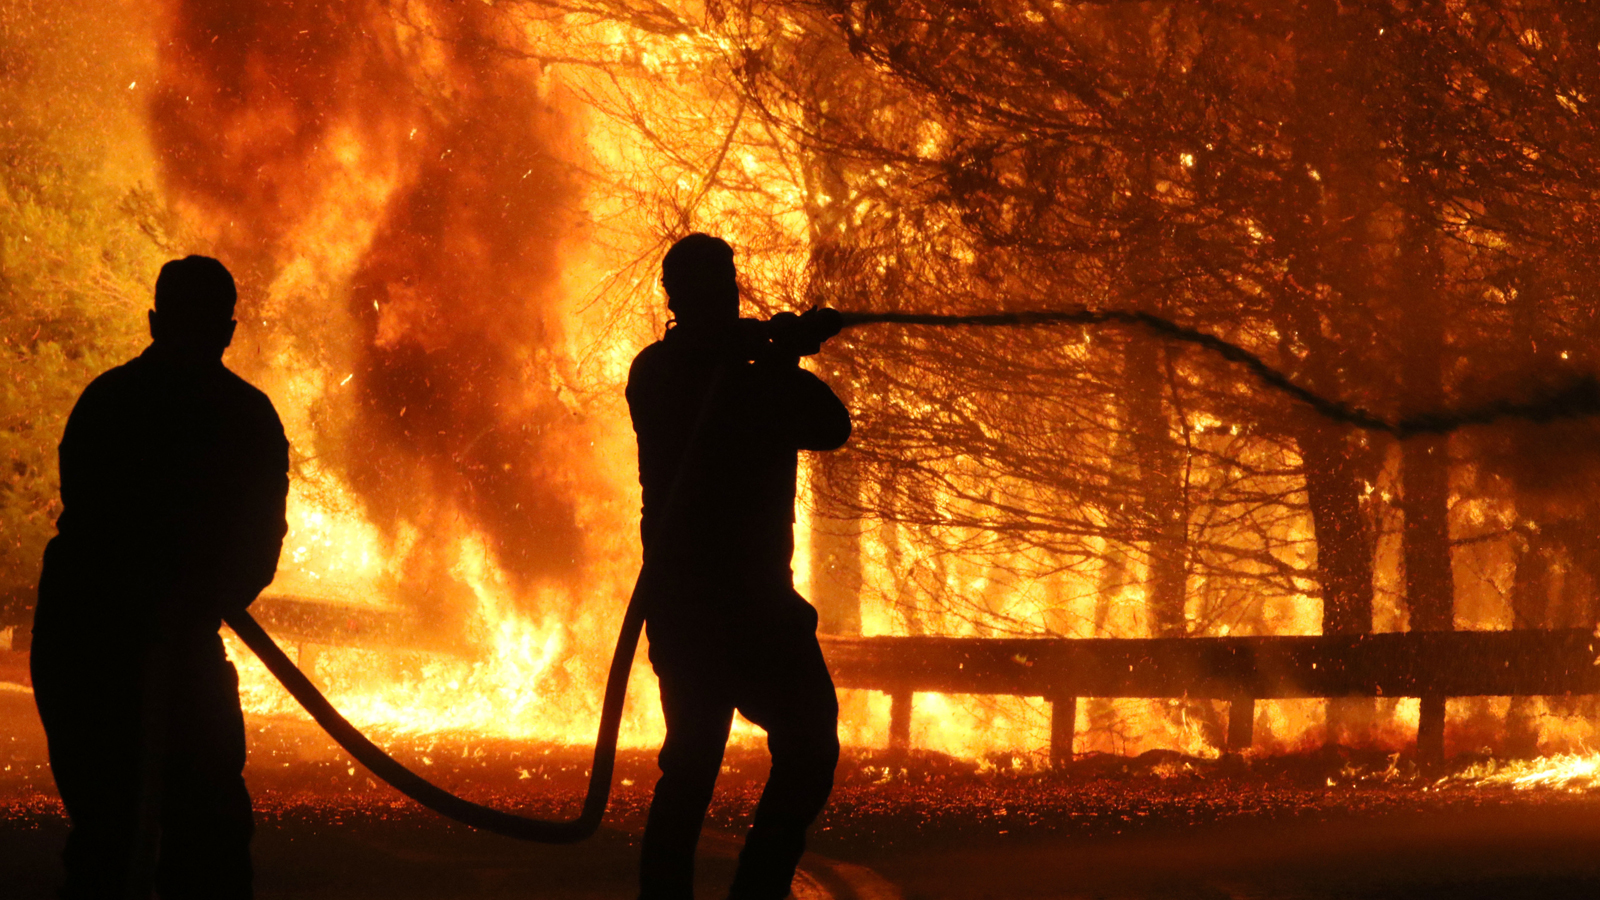 ΚΥΒΙΔΕΣ: Κινδύνεψαν κατοικίες από την πυρκαγιά – Έγινε διάσωση δύο προσώπων από την Πυροσβεστική – Υπό πλήρη έλεγχο η φωτιά